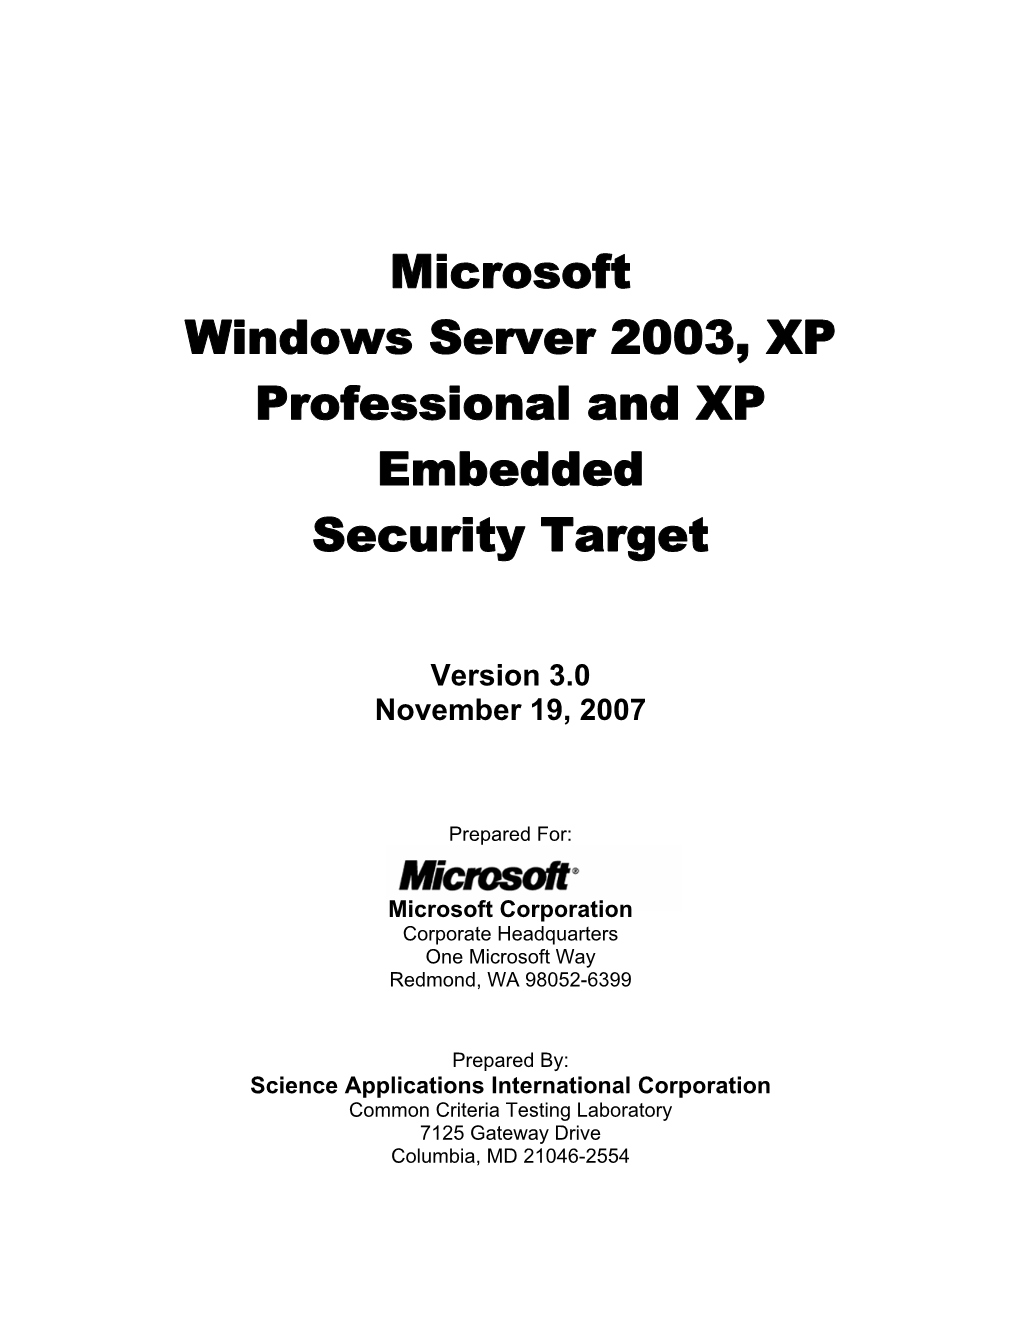 Windows 2003/XP Security Target